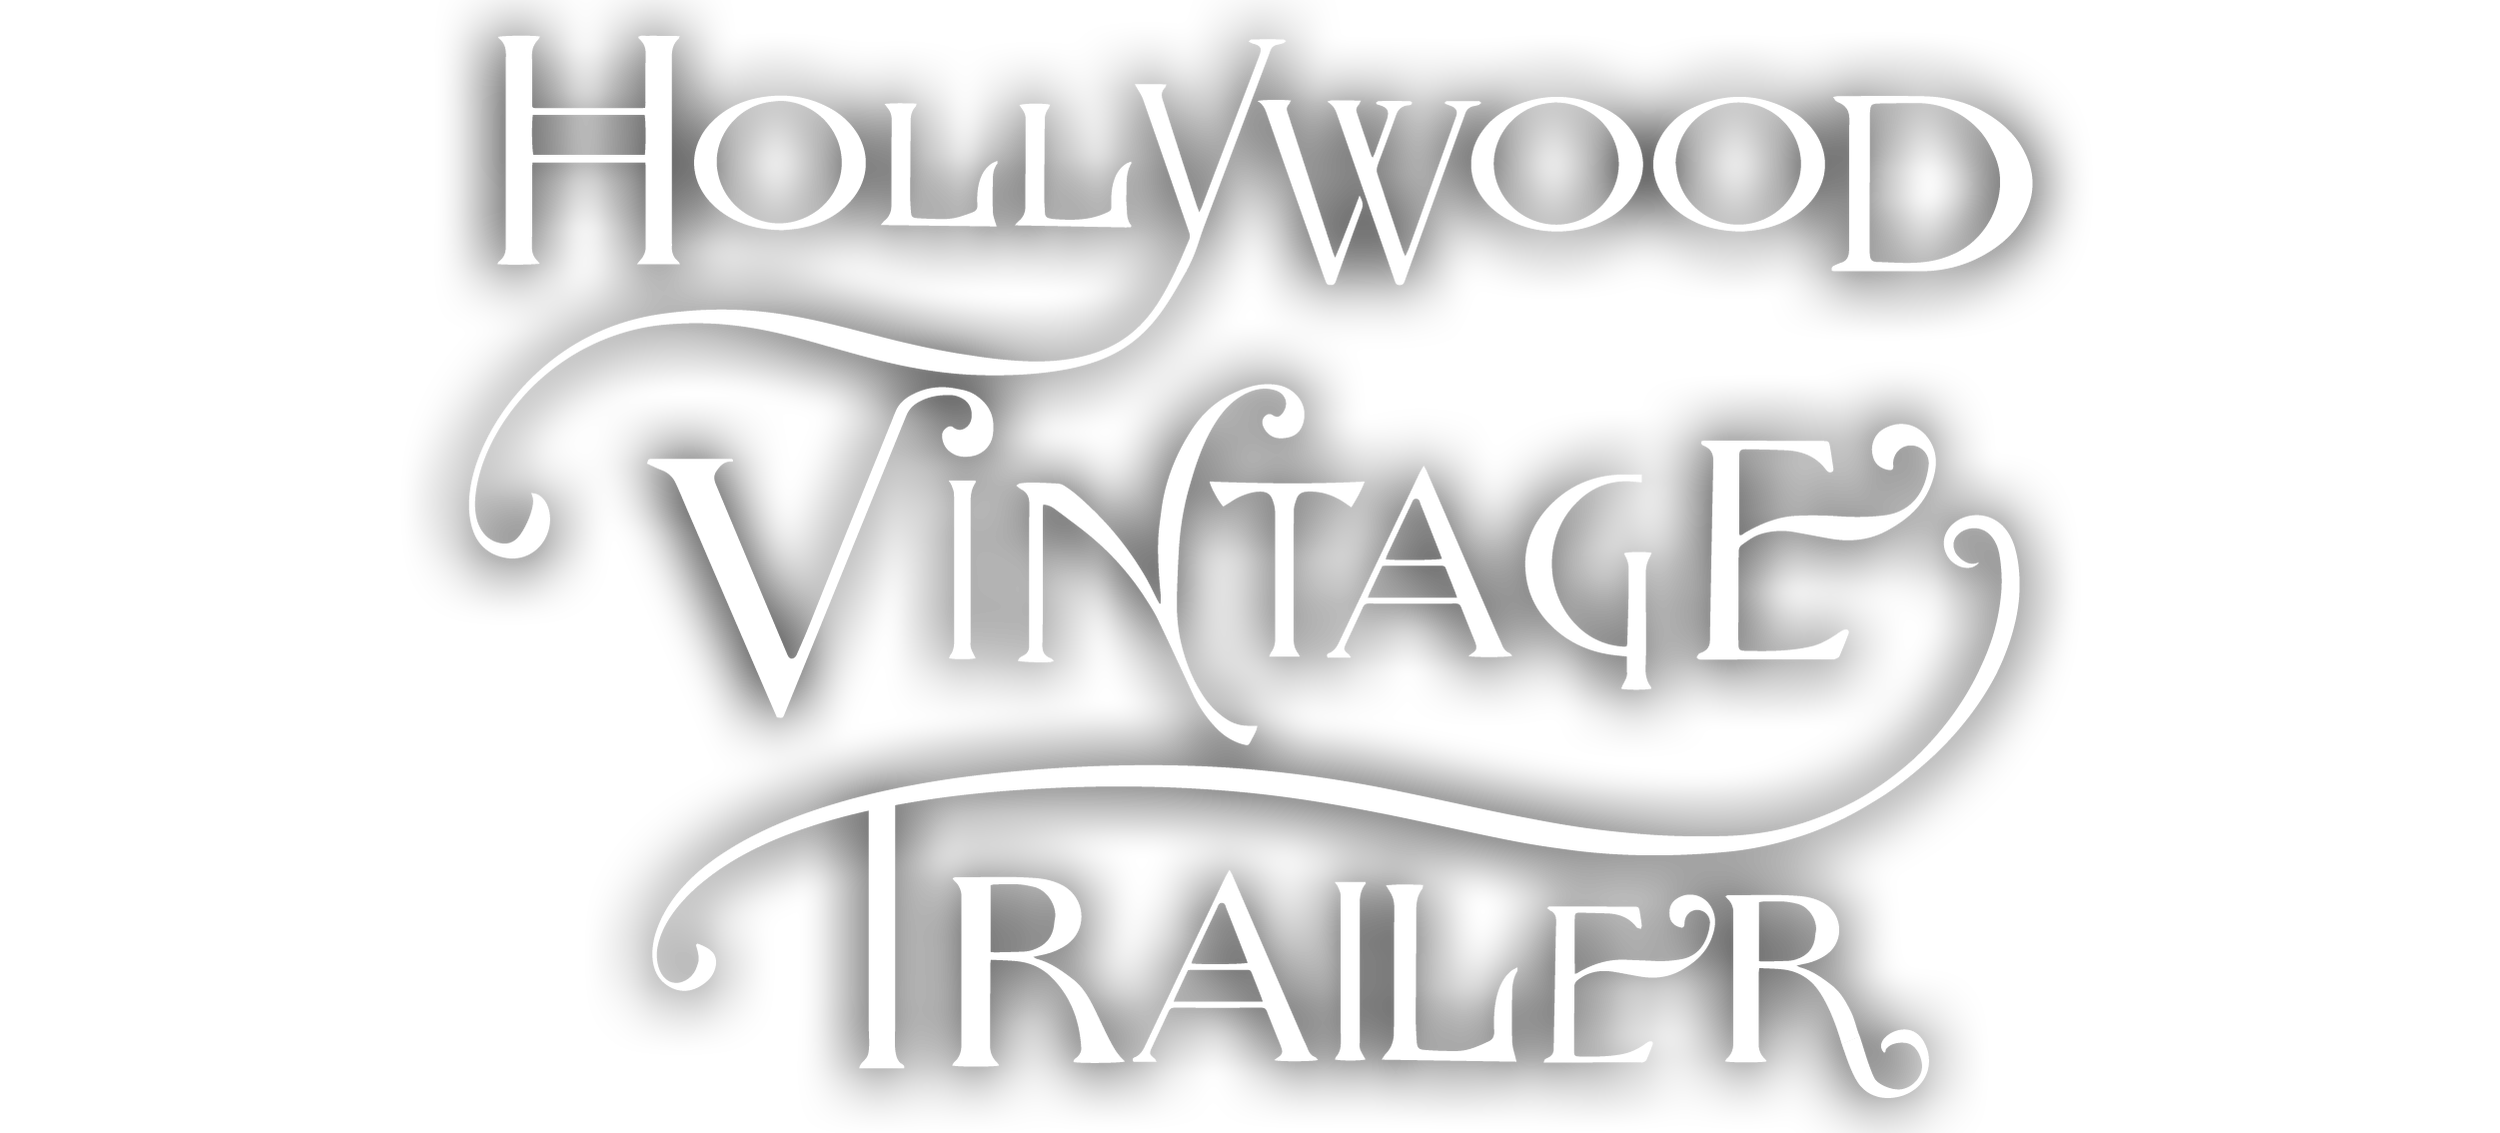 Hollywood Vintage Trailer